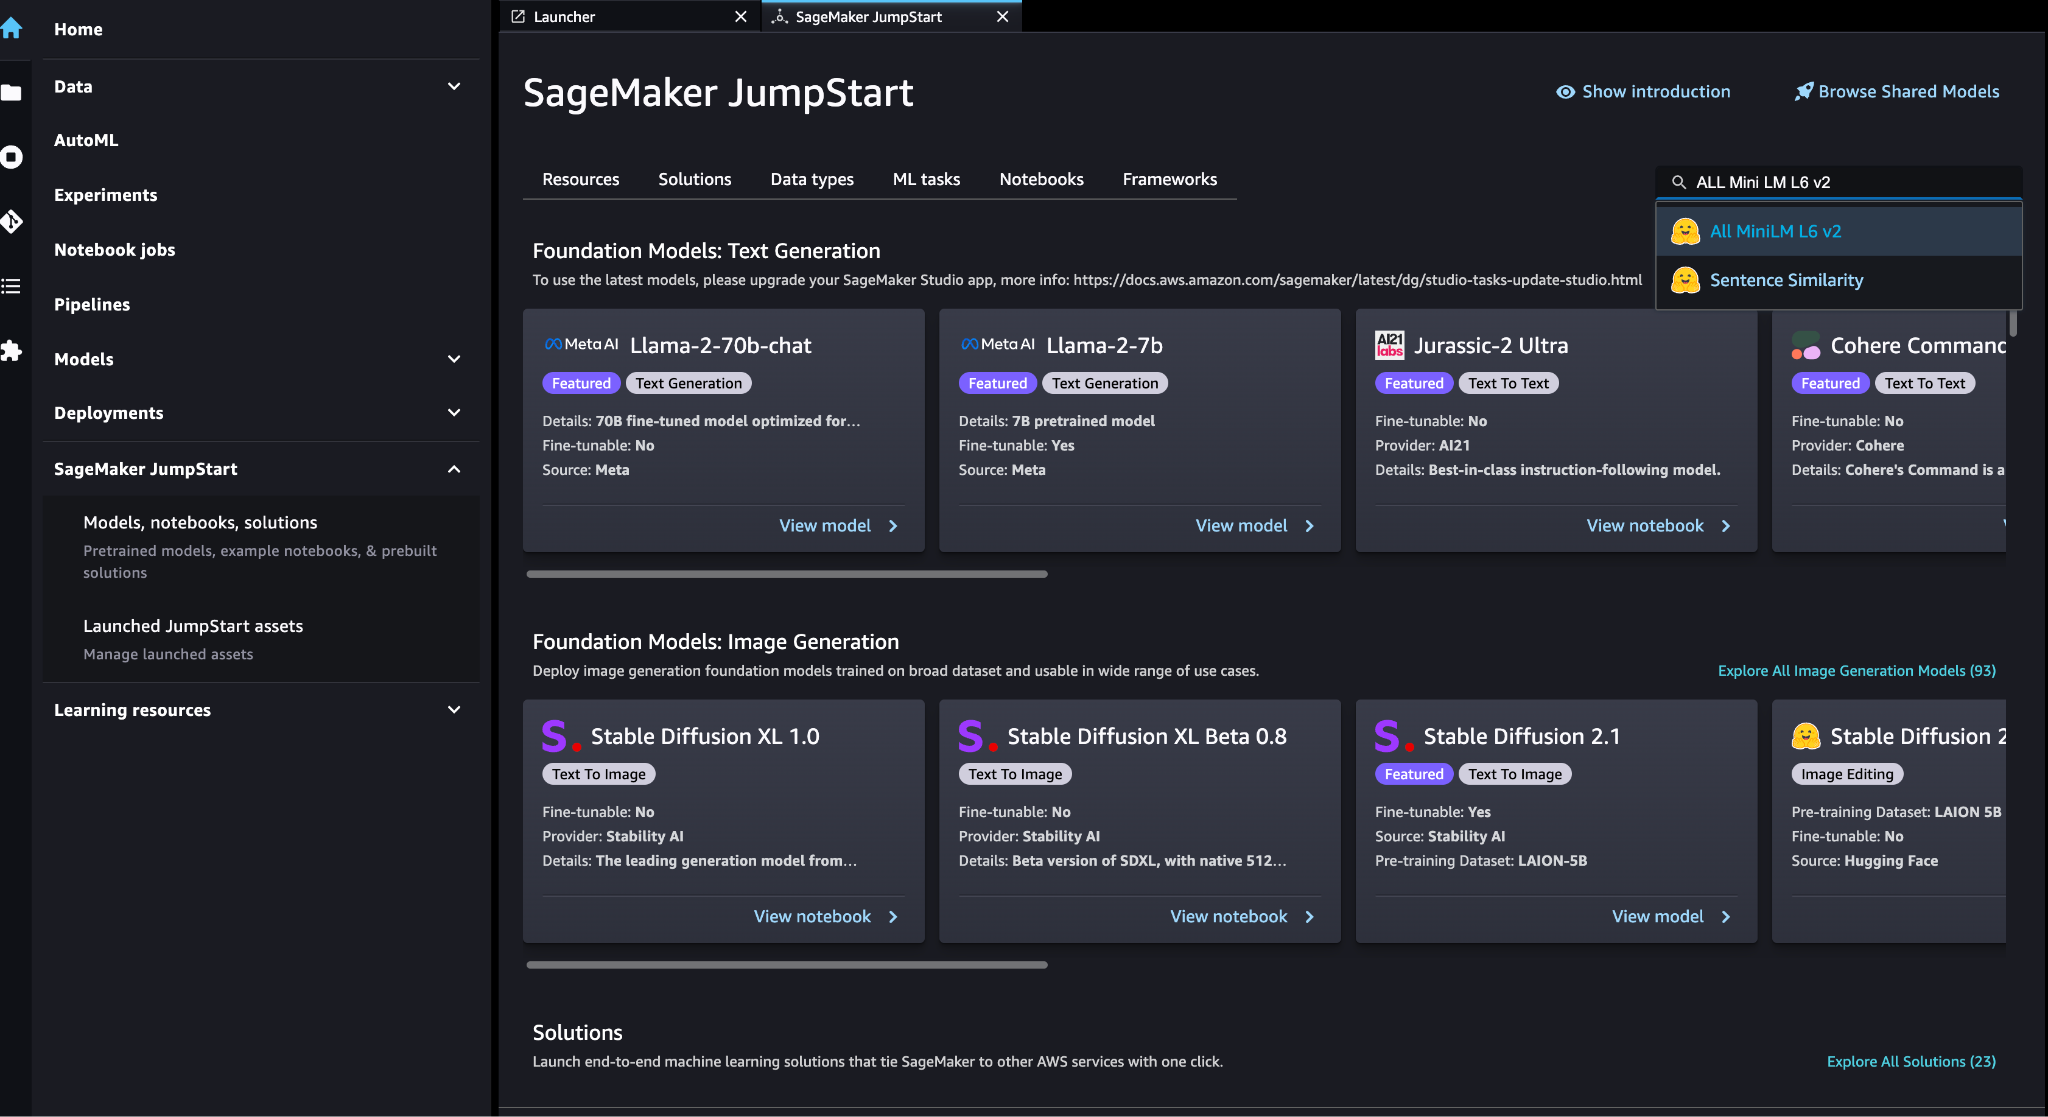 SageMaker JumpStart Modelos, portátiles, soluciones